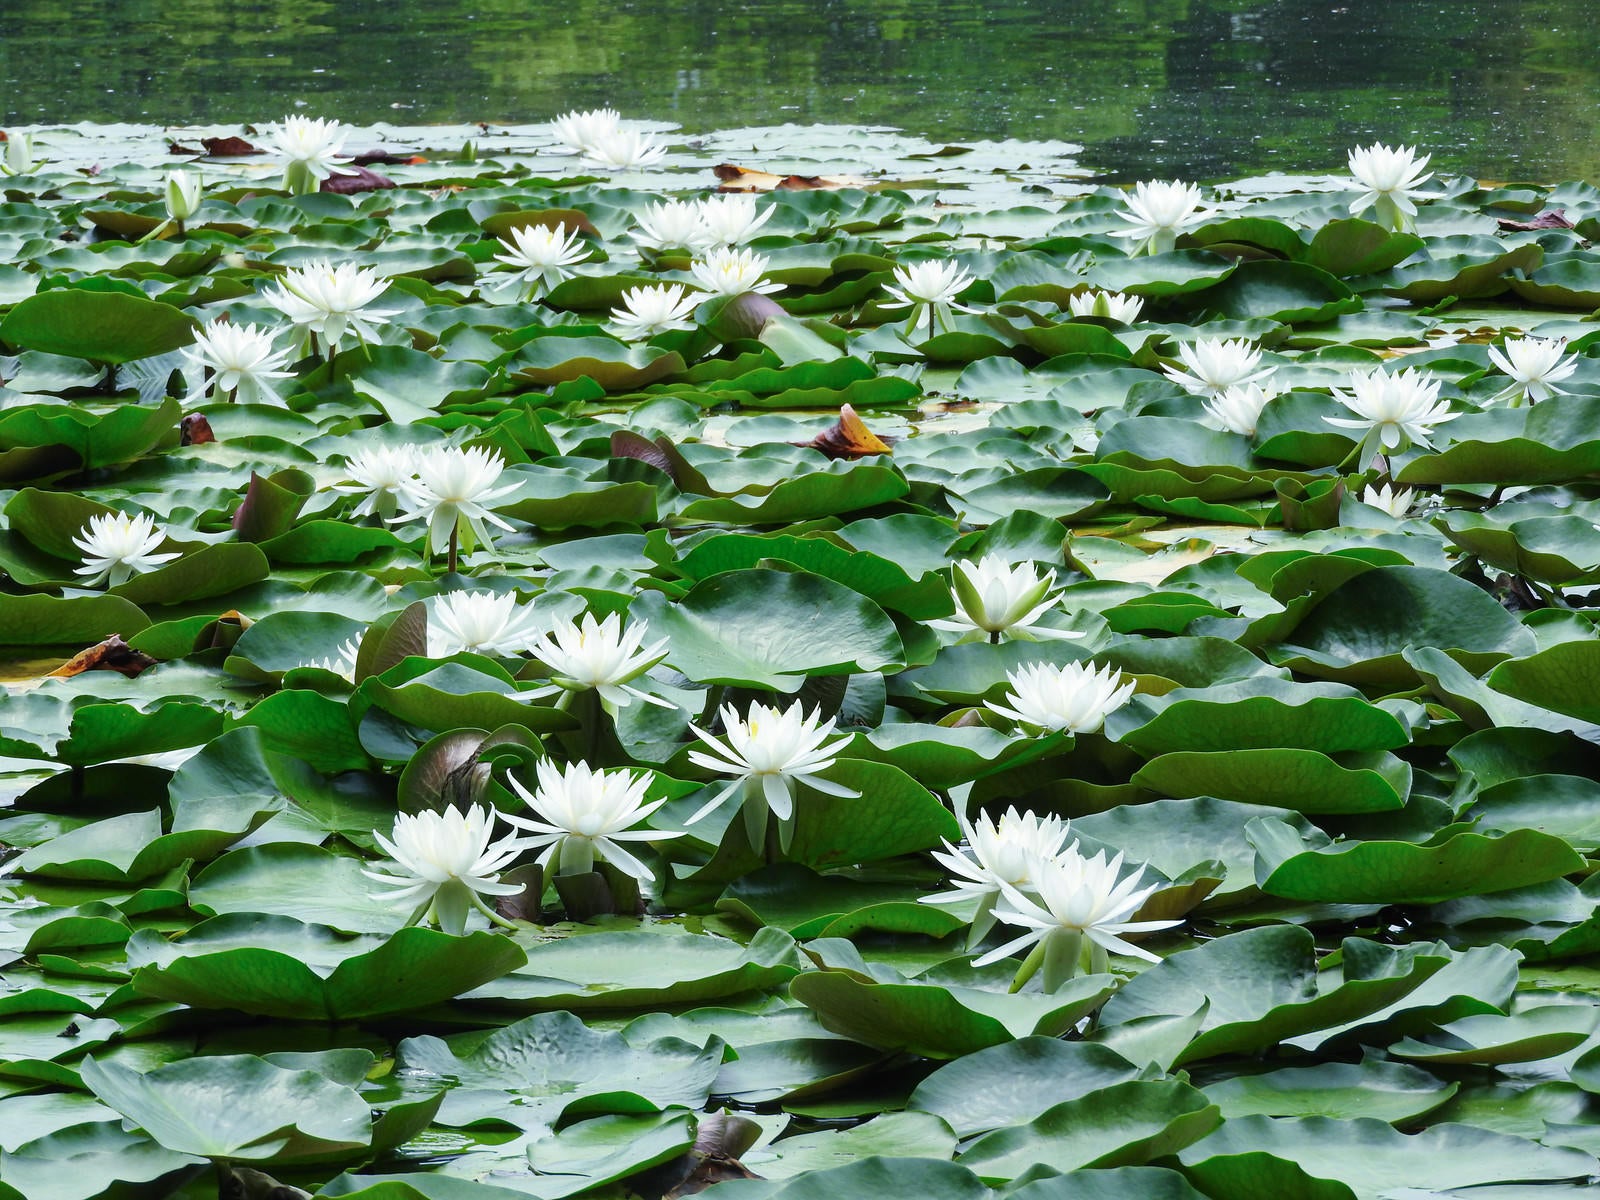 「池に咲く睡蓮」の写真